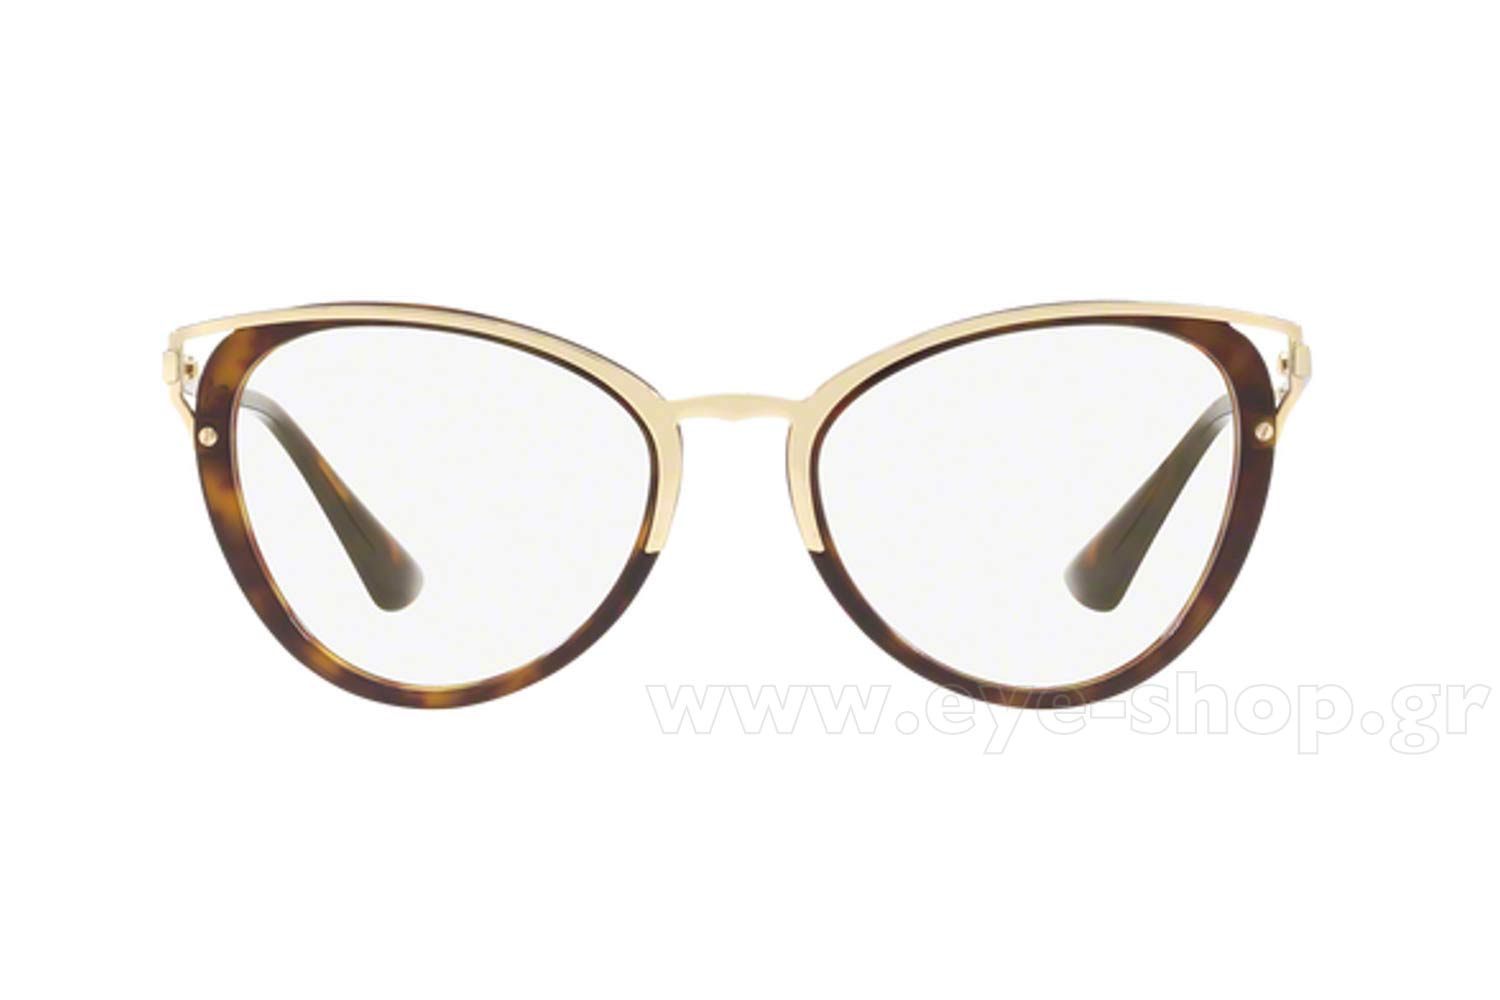 prada eyeglasses womens 2018